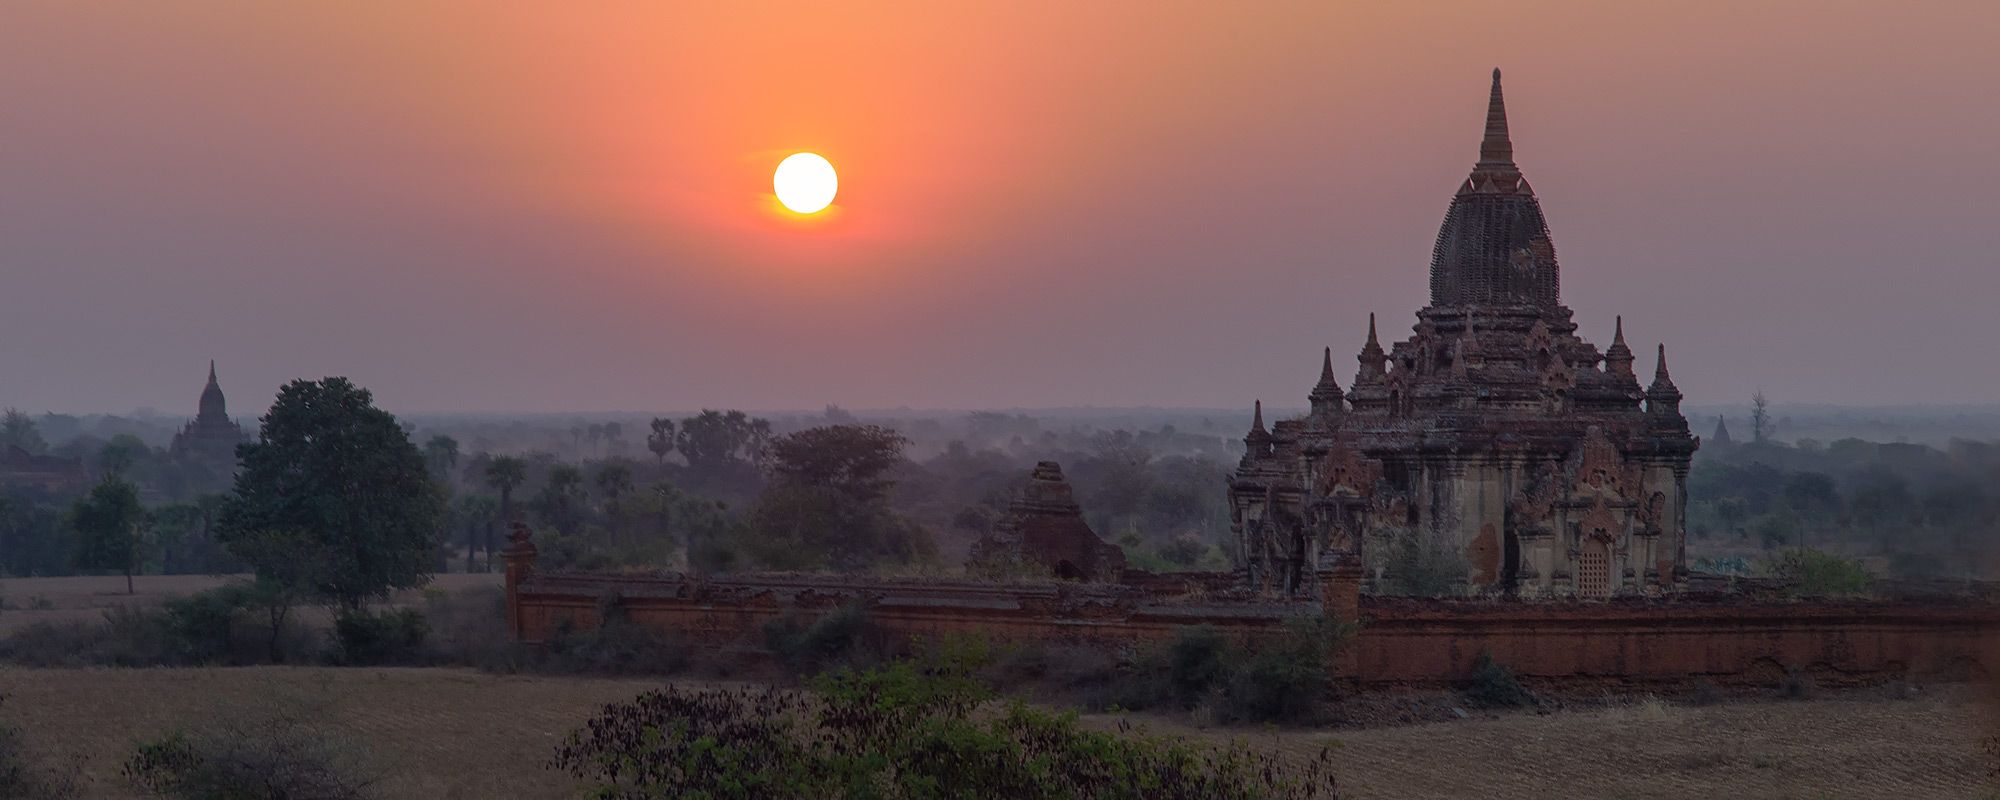 ebene von Bagan